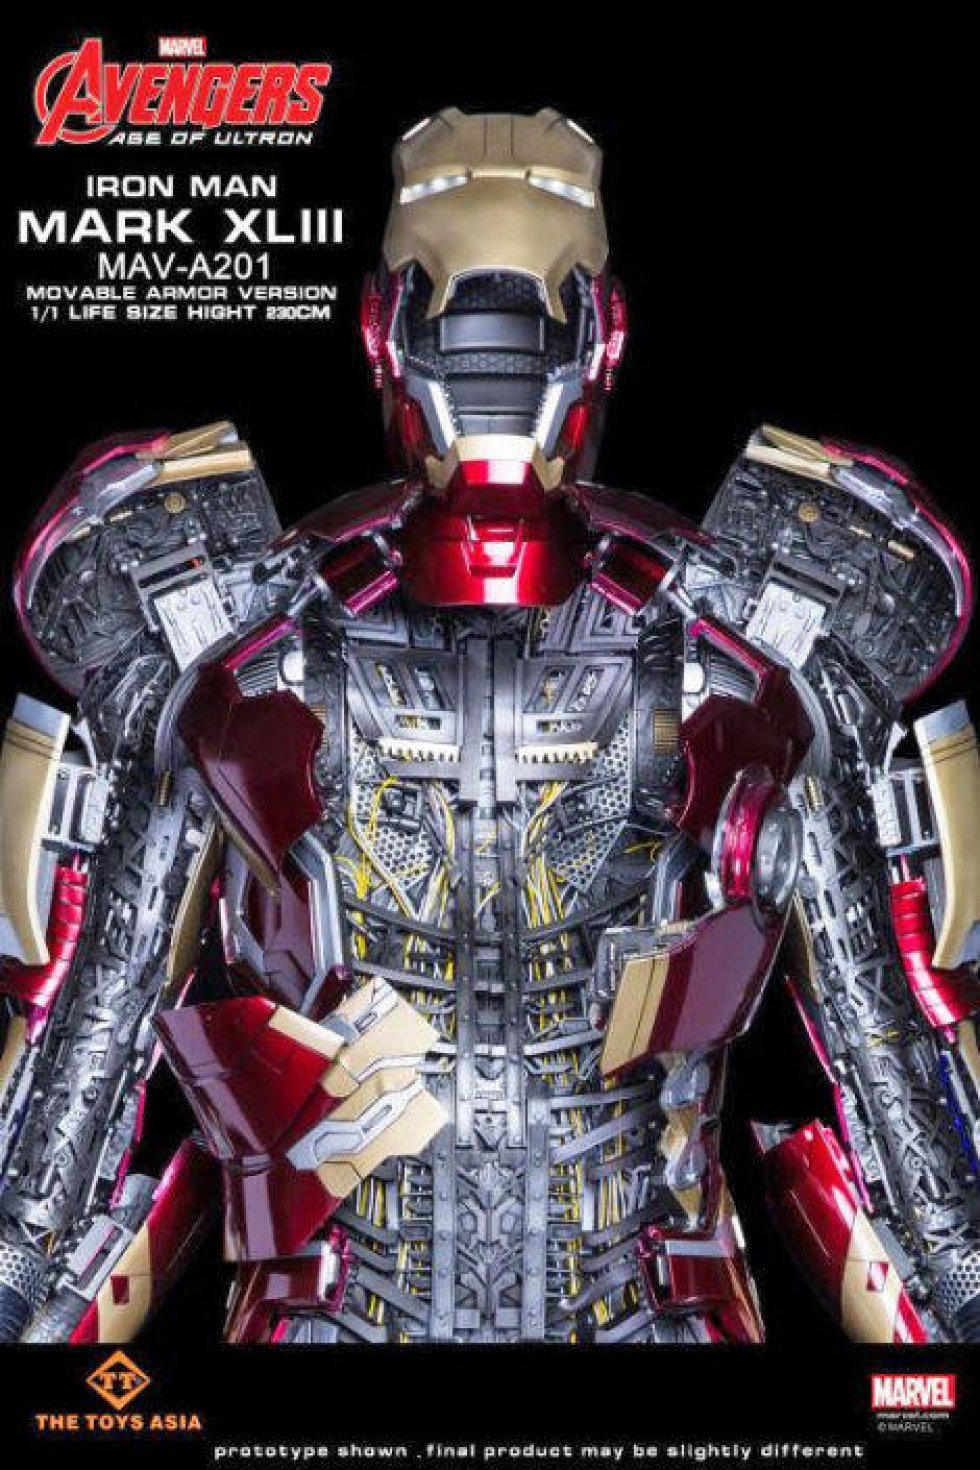 Nu kan du få dit eget 1:1 Iron Man-suit